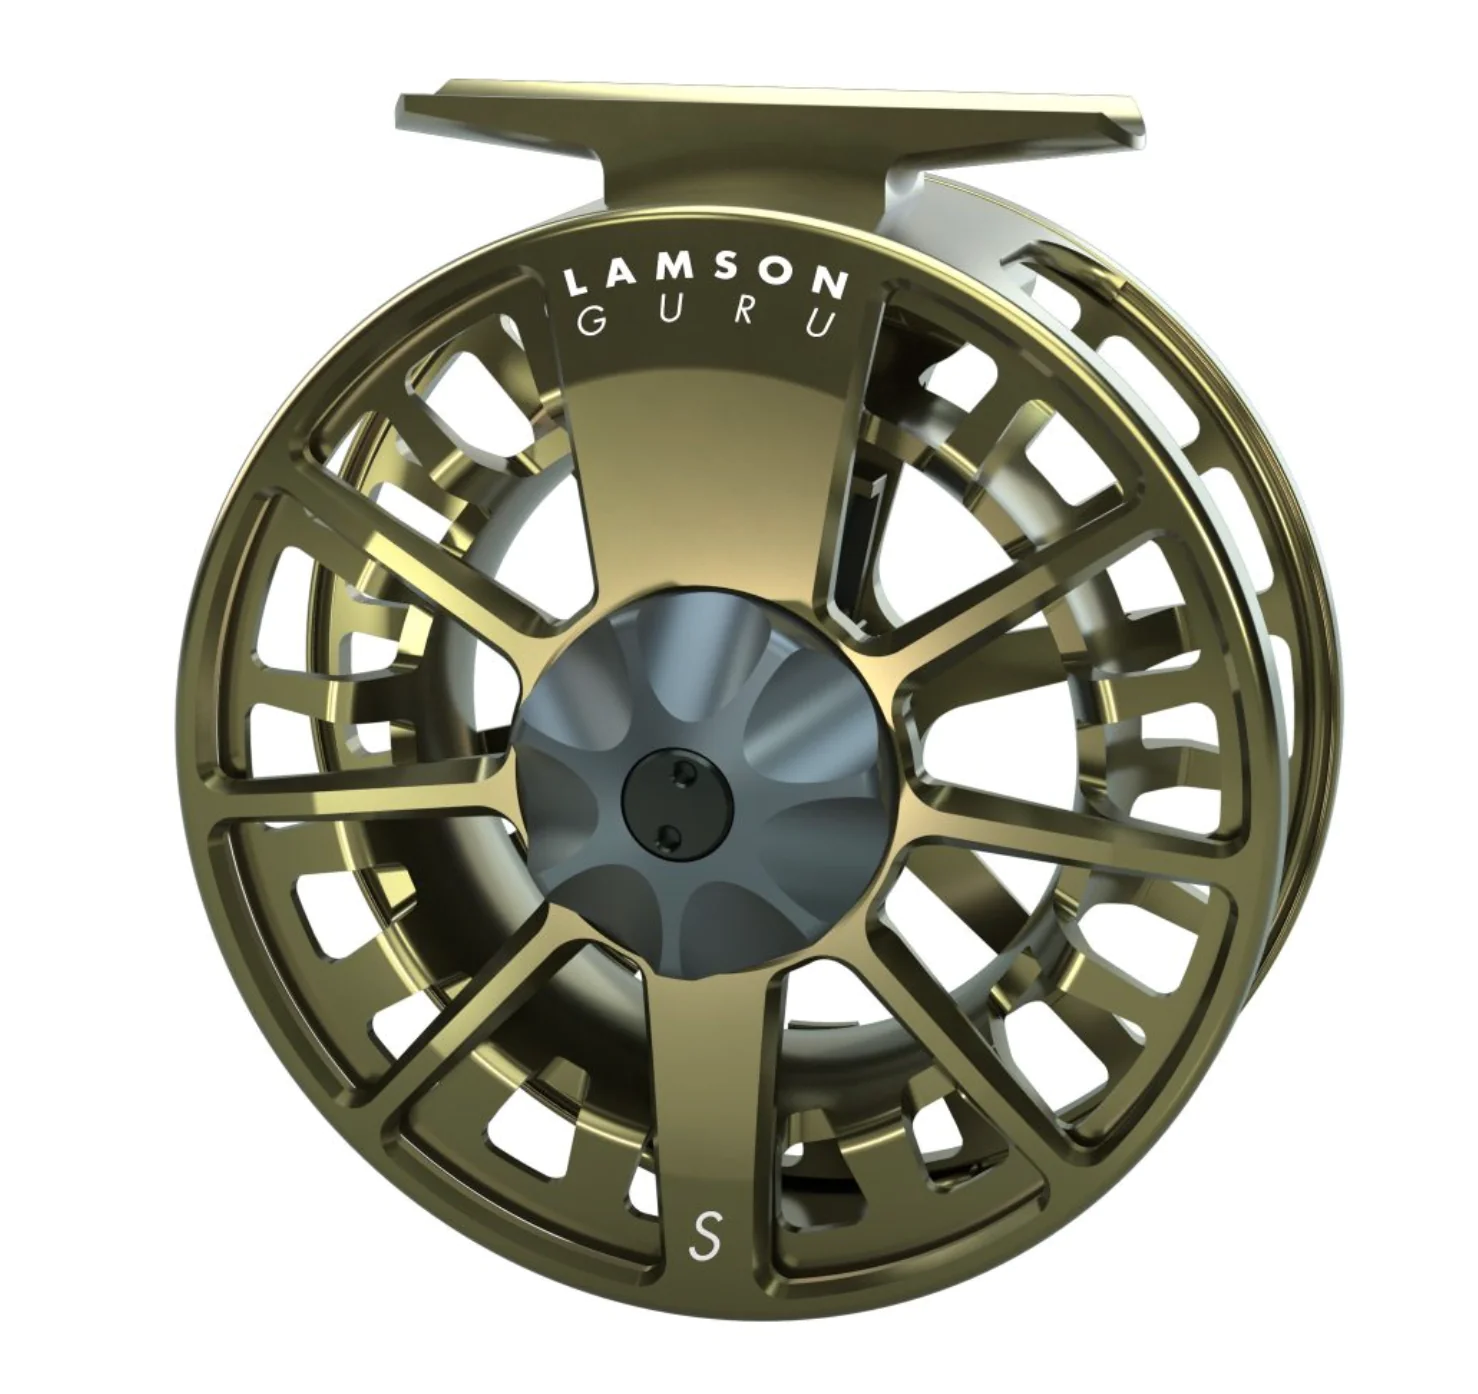 Lamson Guru S-Series Fly Reel